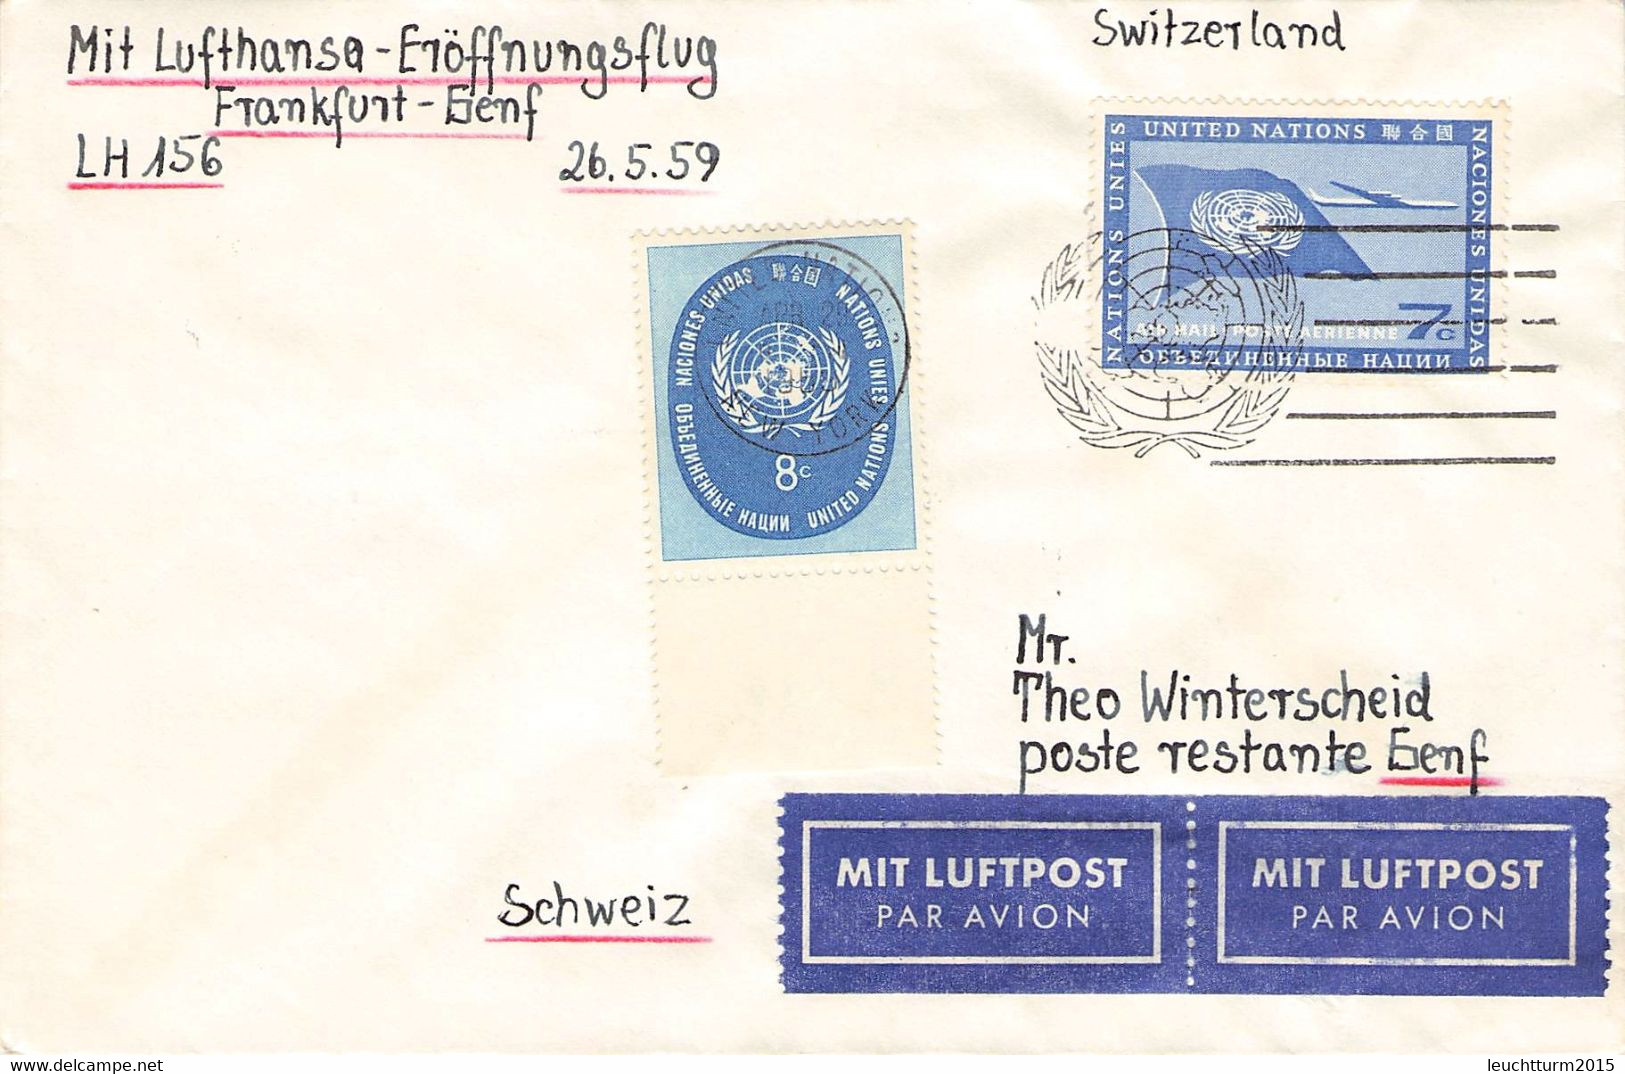 UNITED NATIONS - FIRST FLIGHT LH156 FRANKFURT - GENF 26.5.1959 / ZL81 - Luftpost